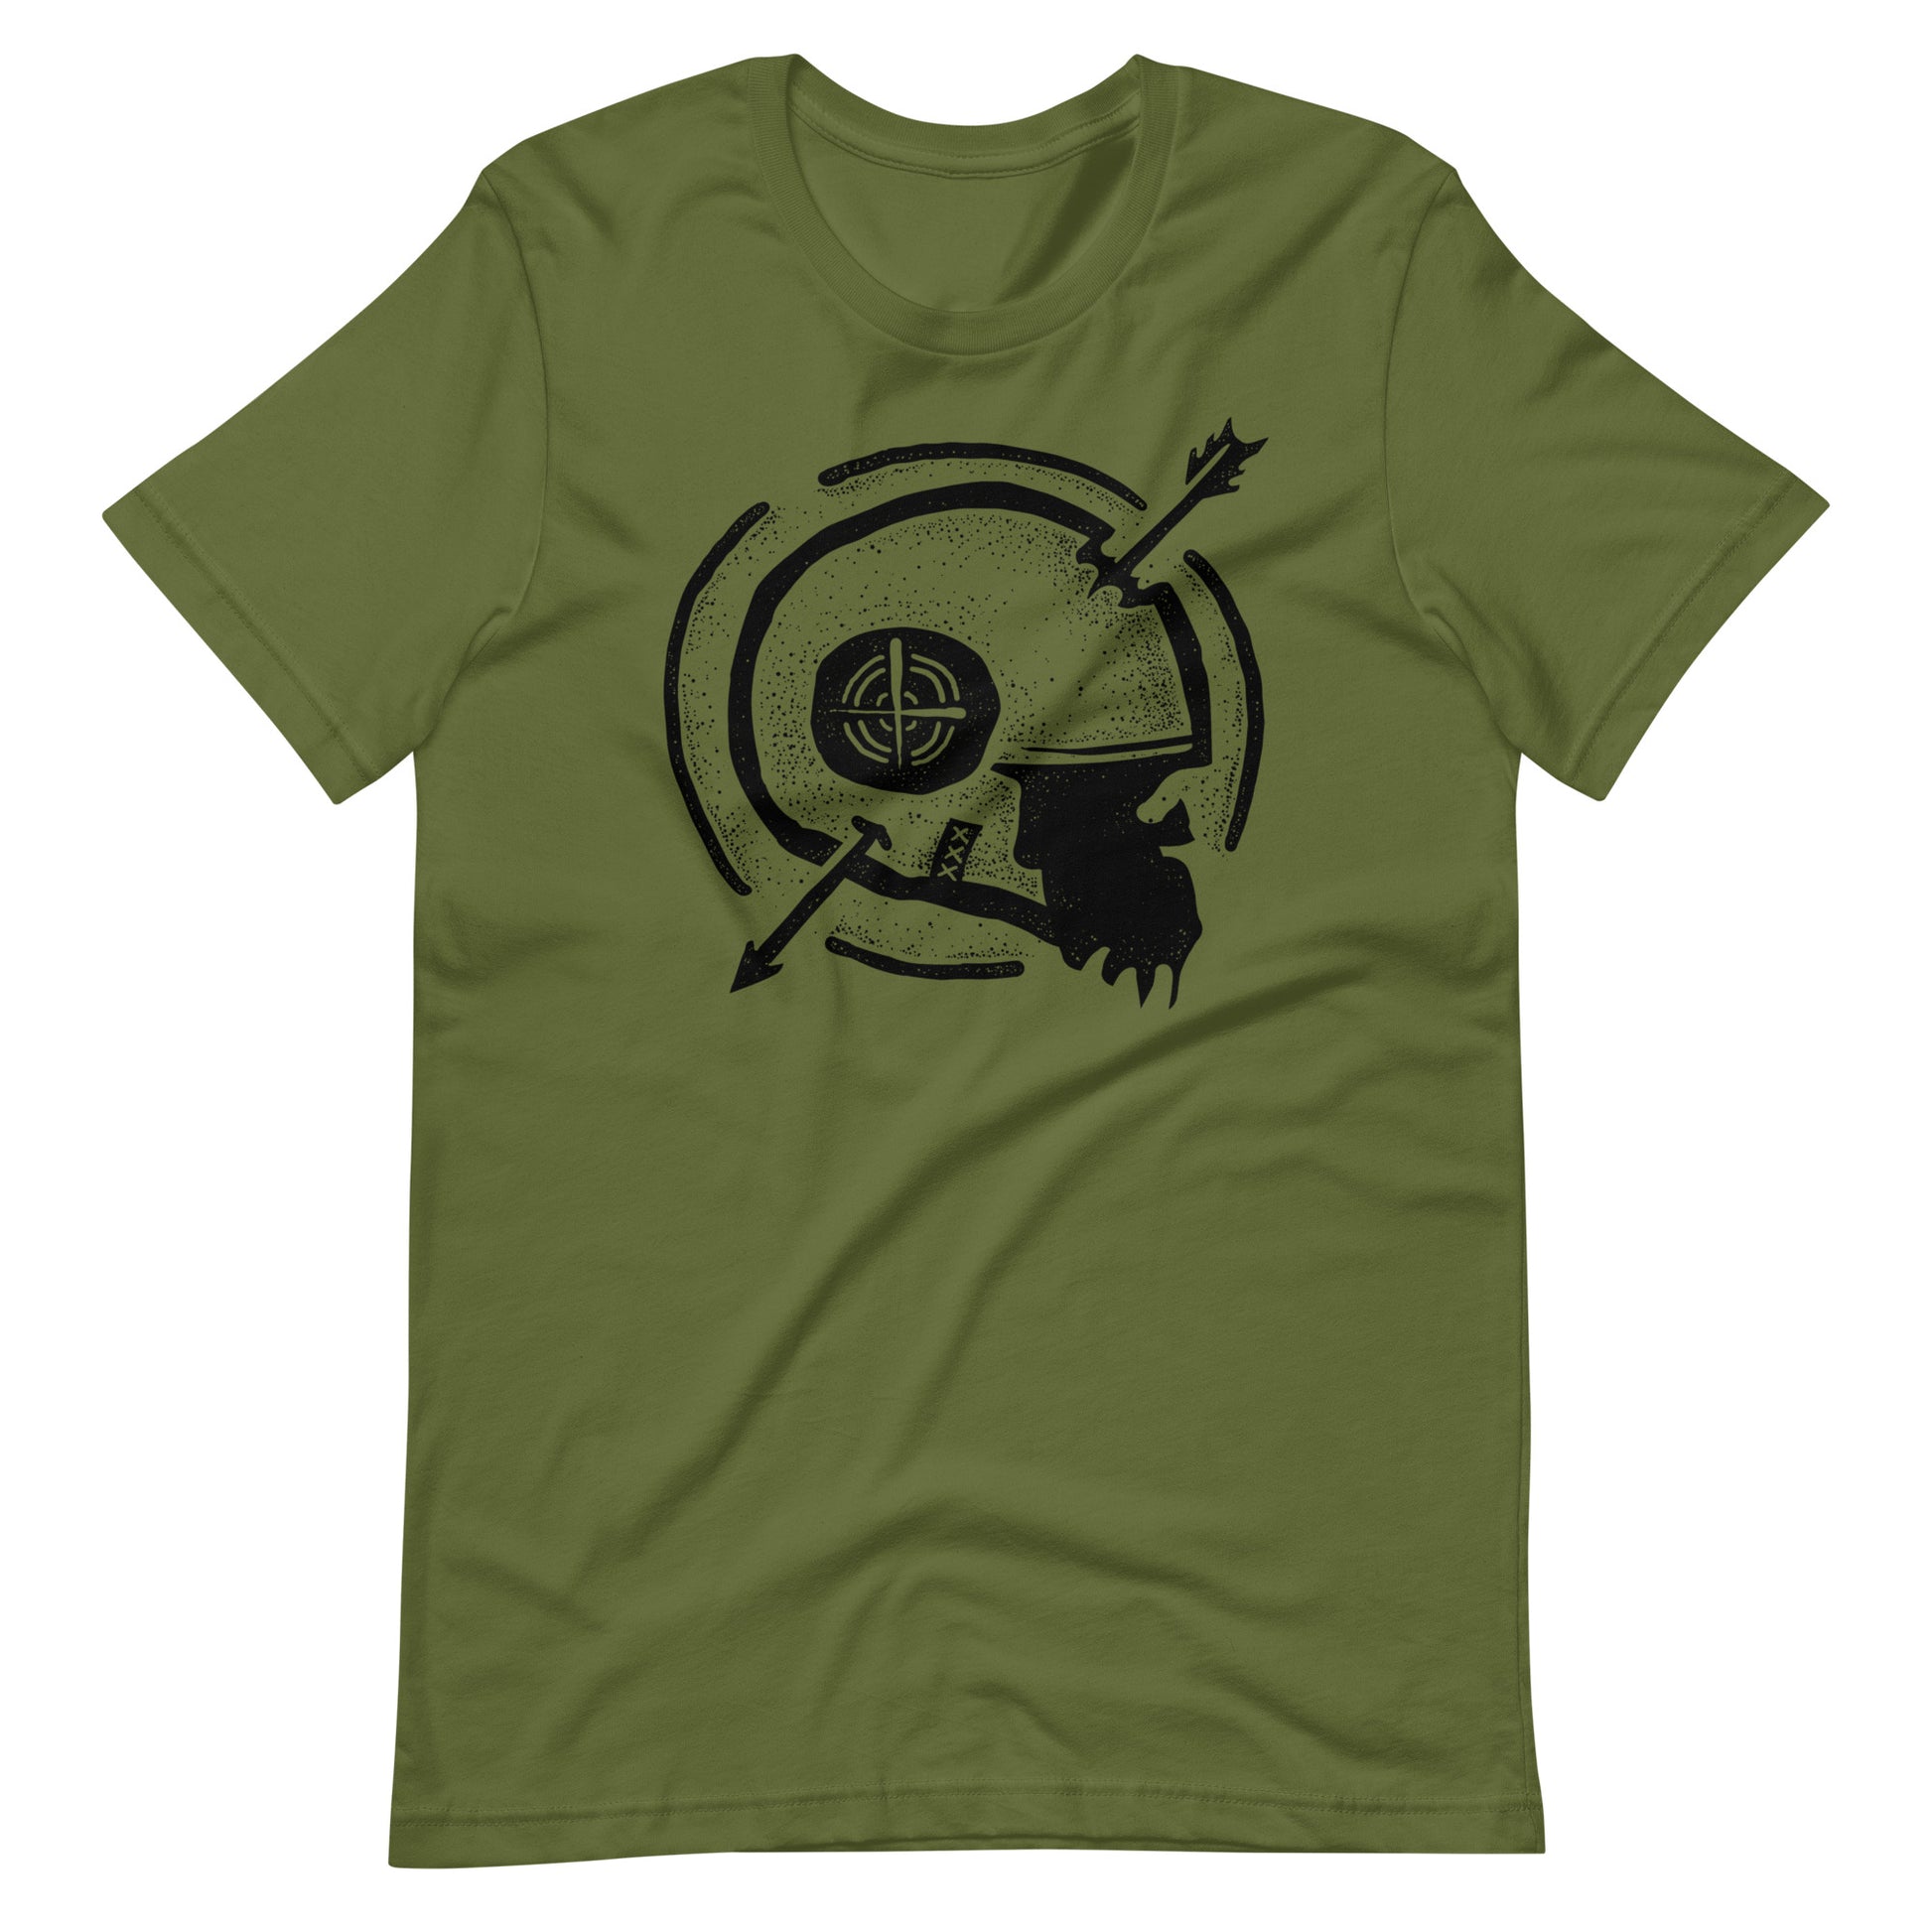 Dead Arrow Black - Men's t-shirt - Olive Front